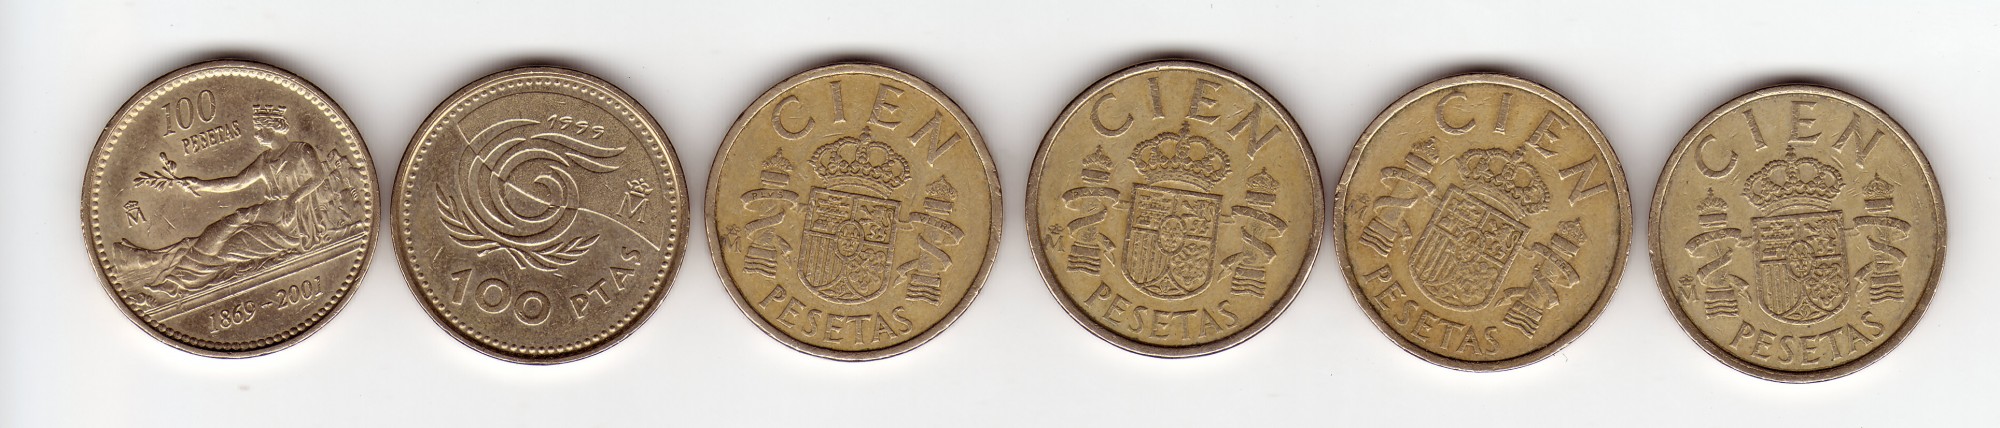 100 pesetas-reverse